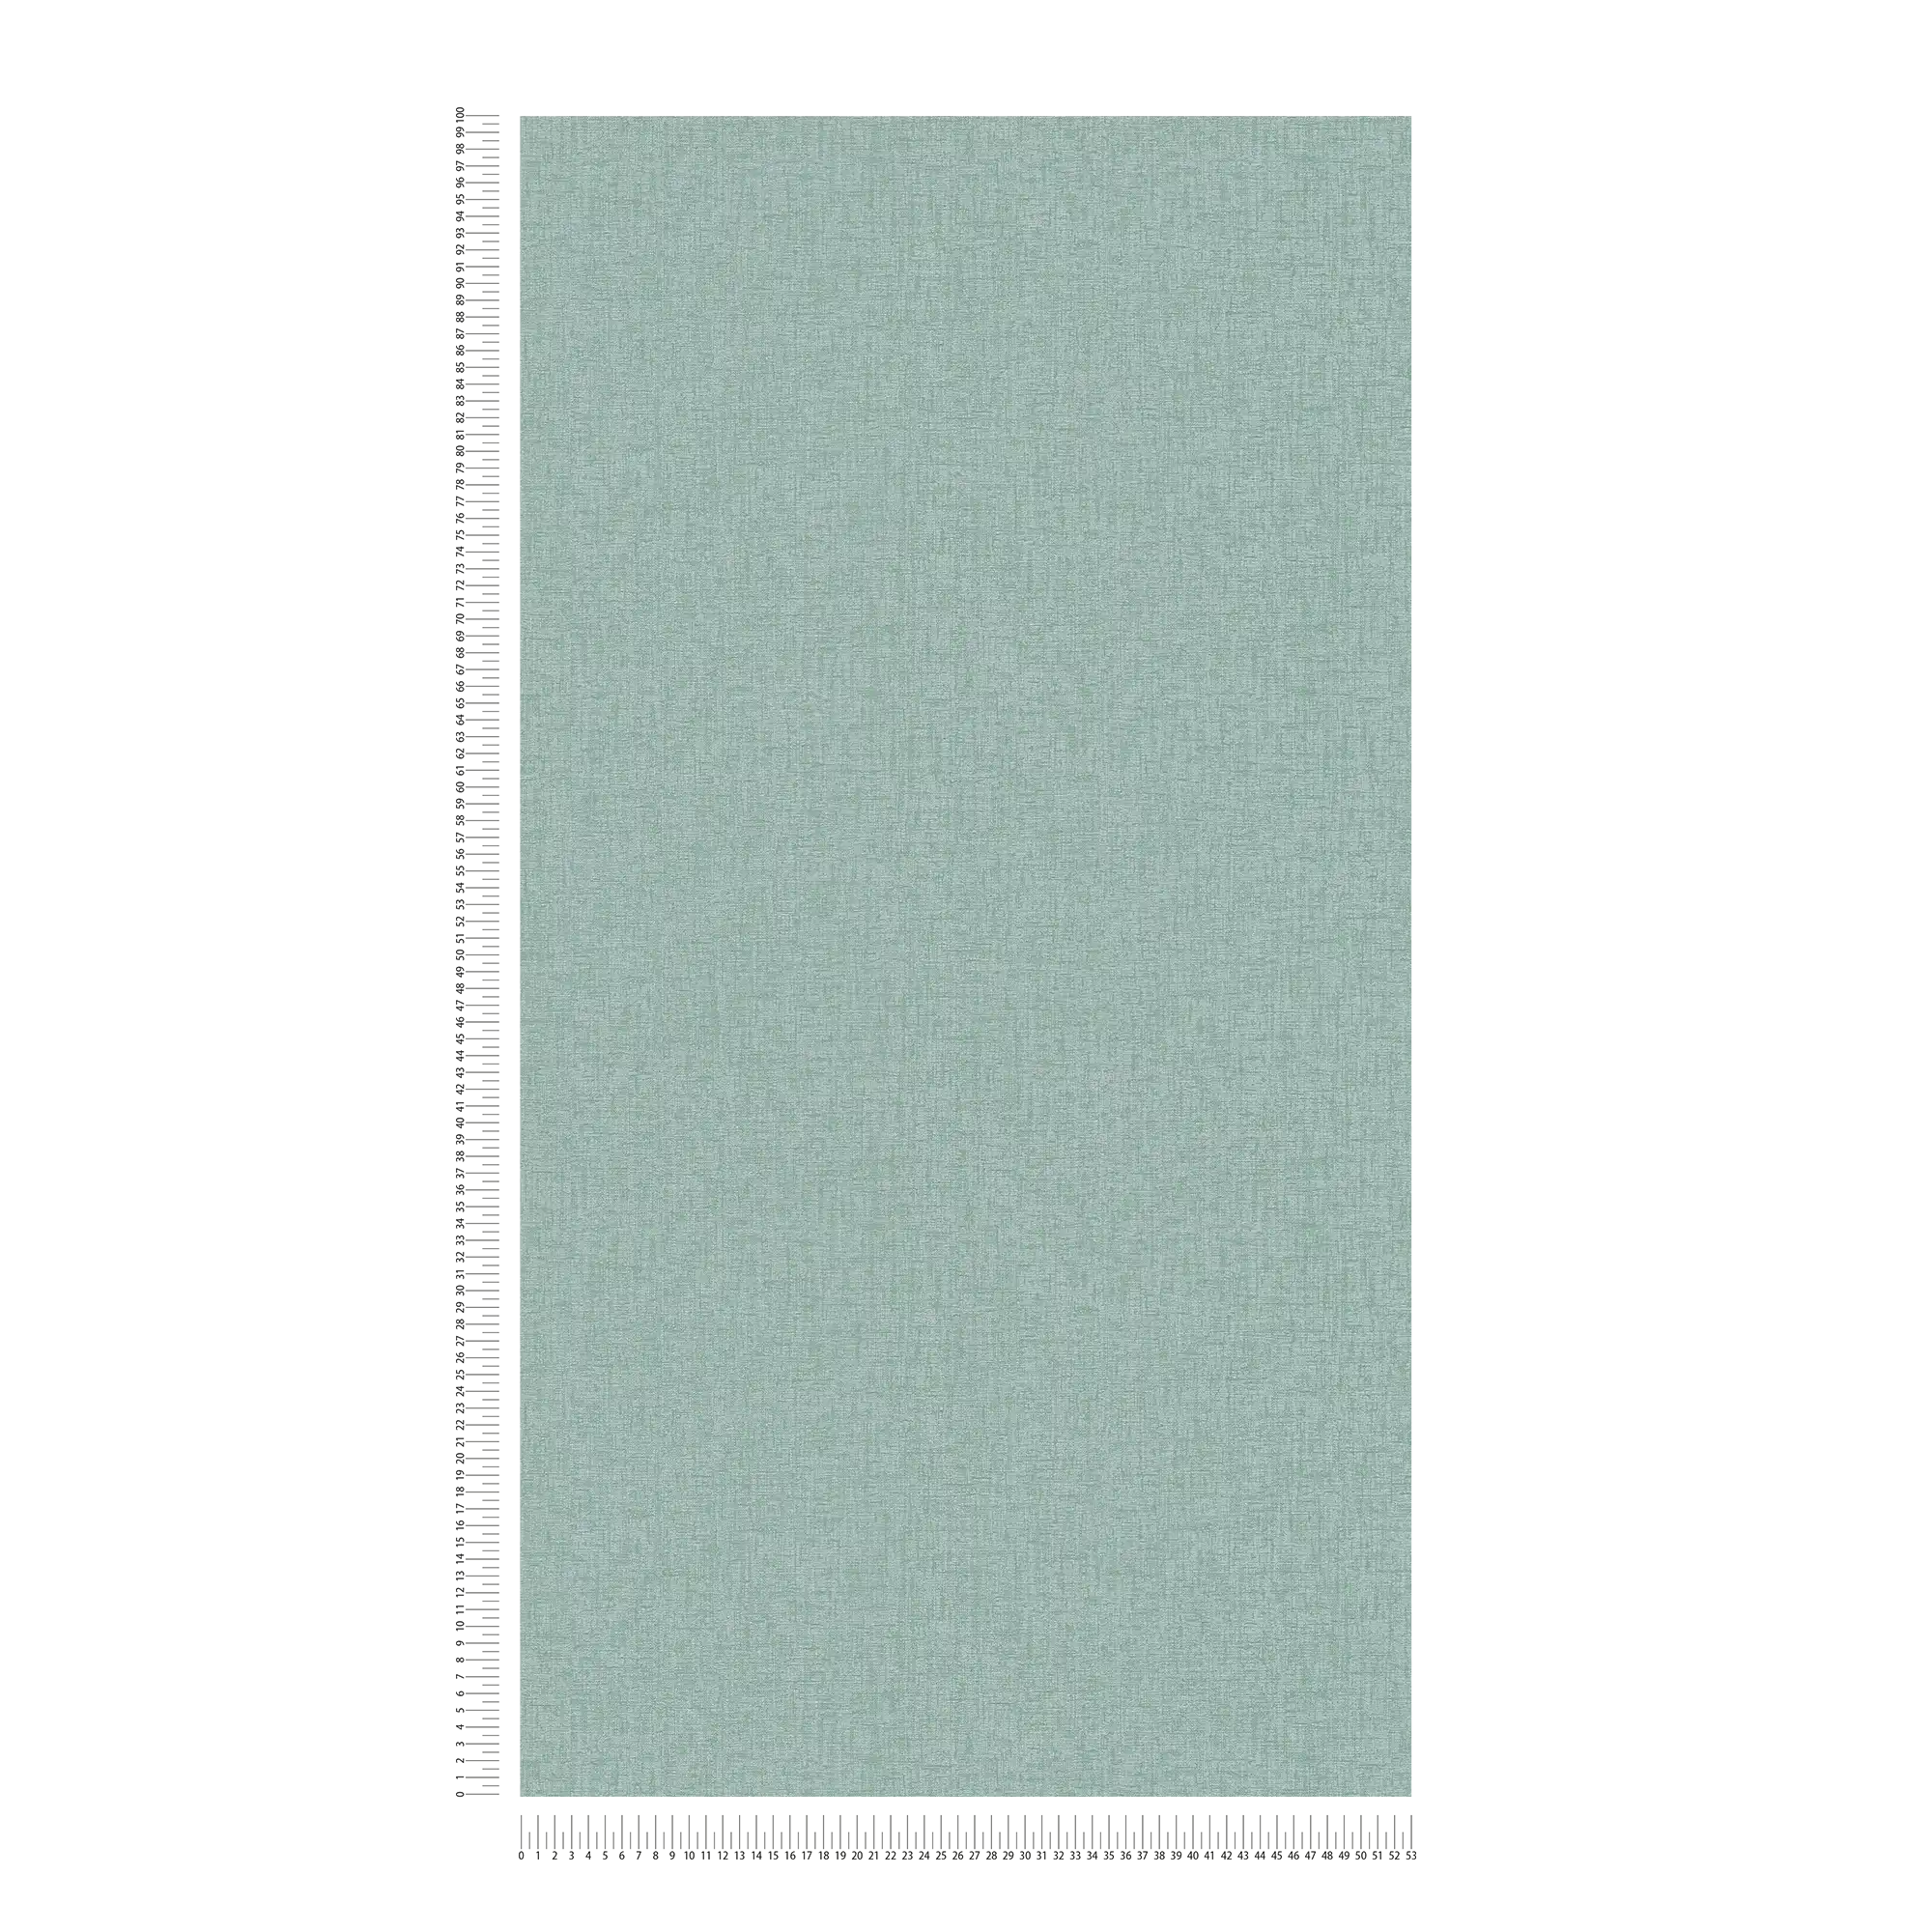             Plain wallpaper with light structure matt - green
        